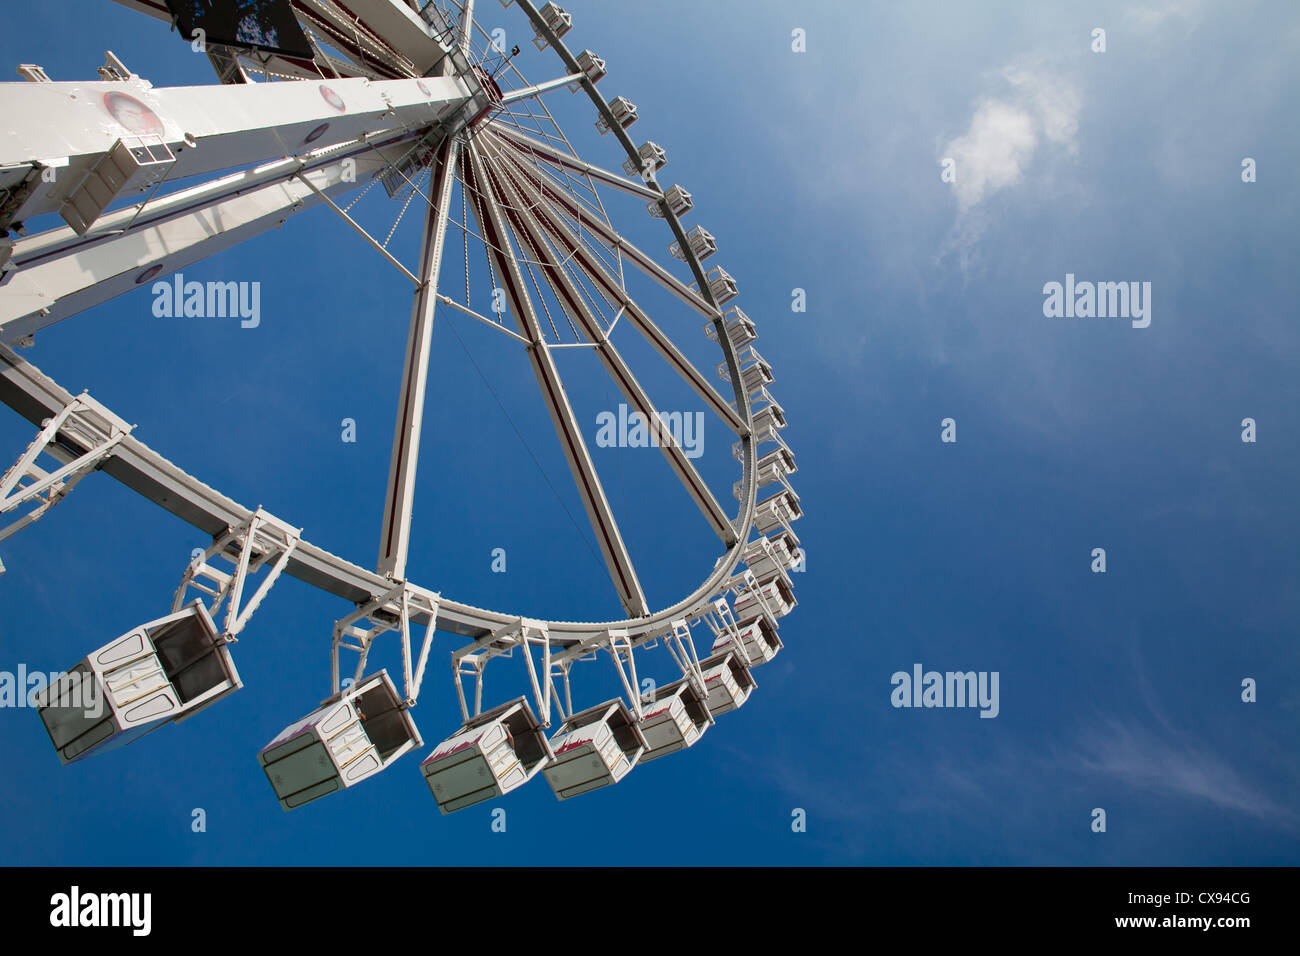 Grande roue ferris ou d'observation contre le ciel bleu Banque D'Images